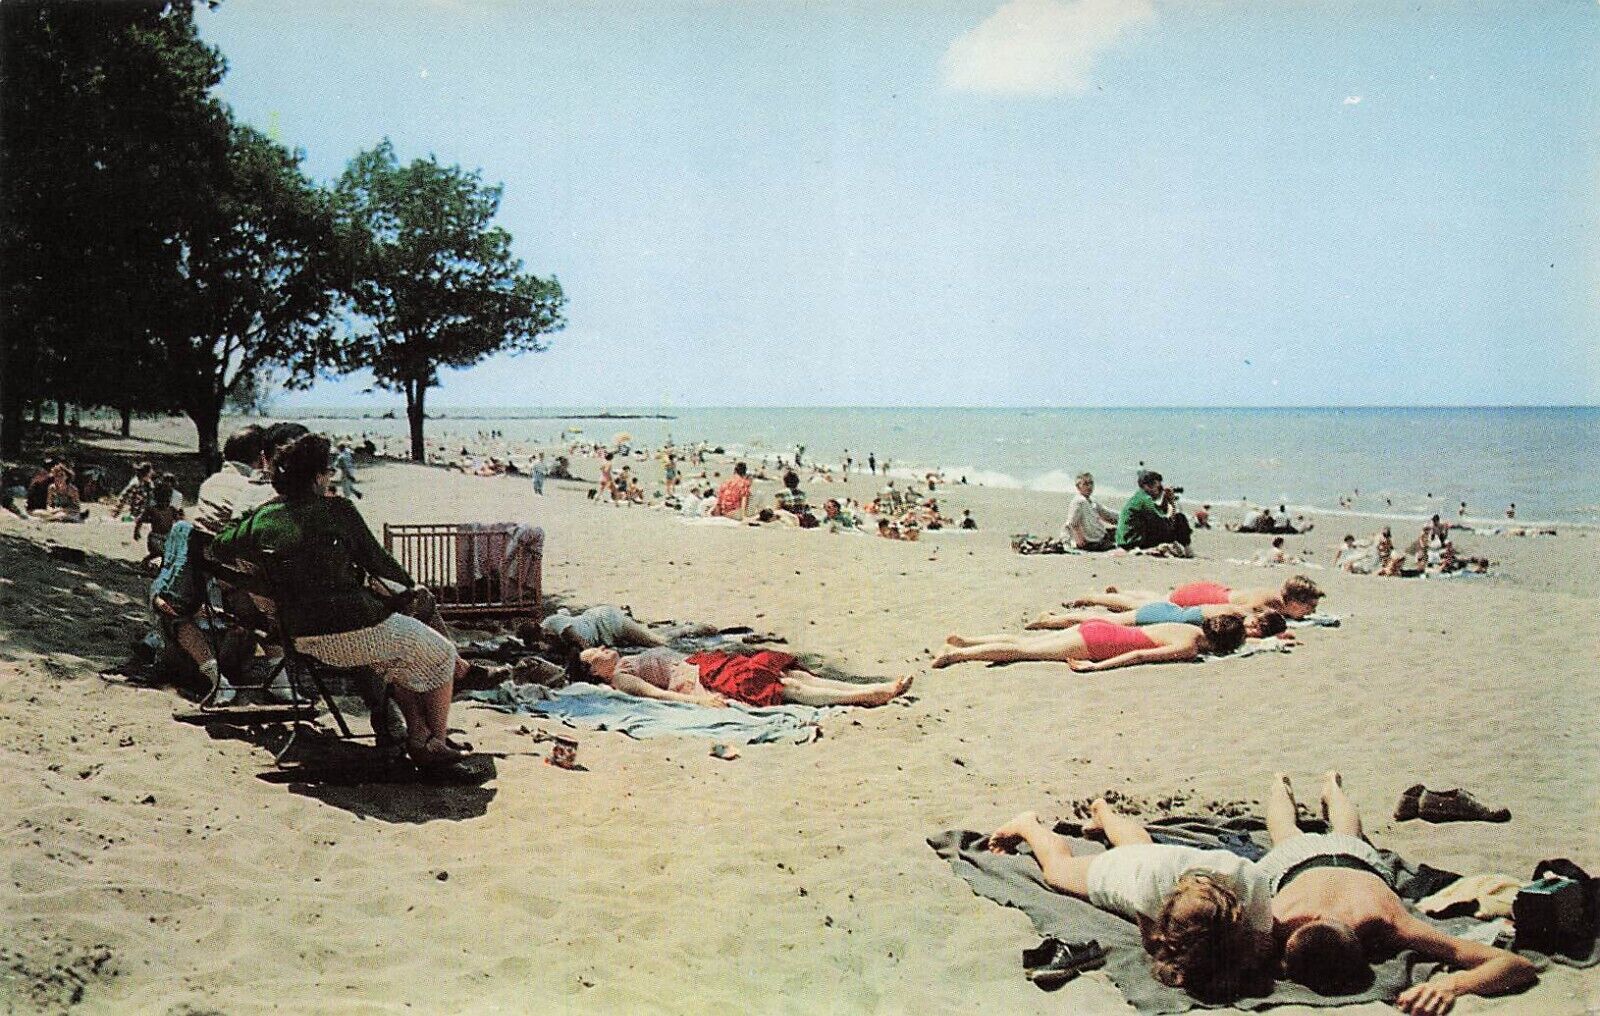 Vermilion Ohio Linwood Park Beach Lake Erie 1950s Vtg Postcard E31